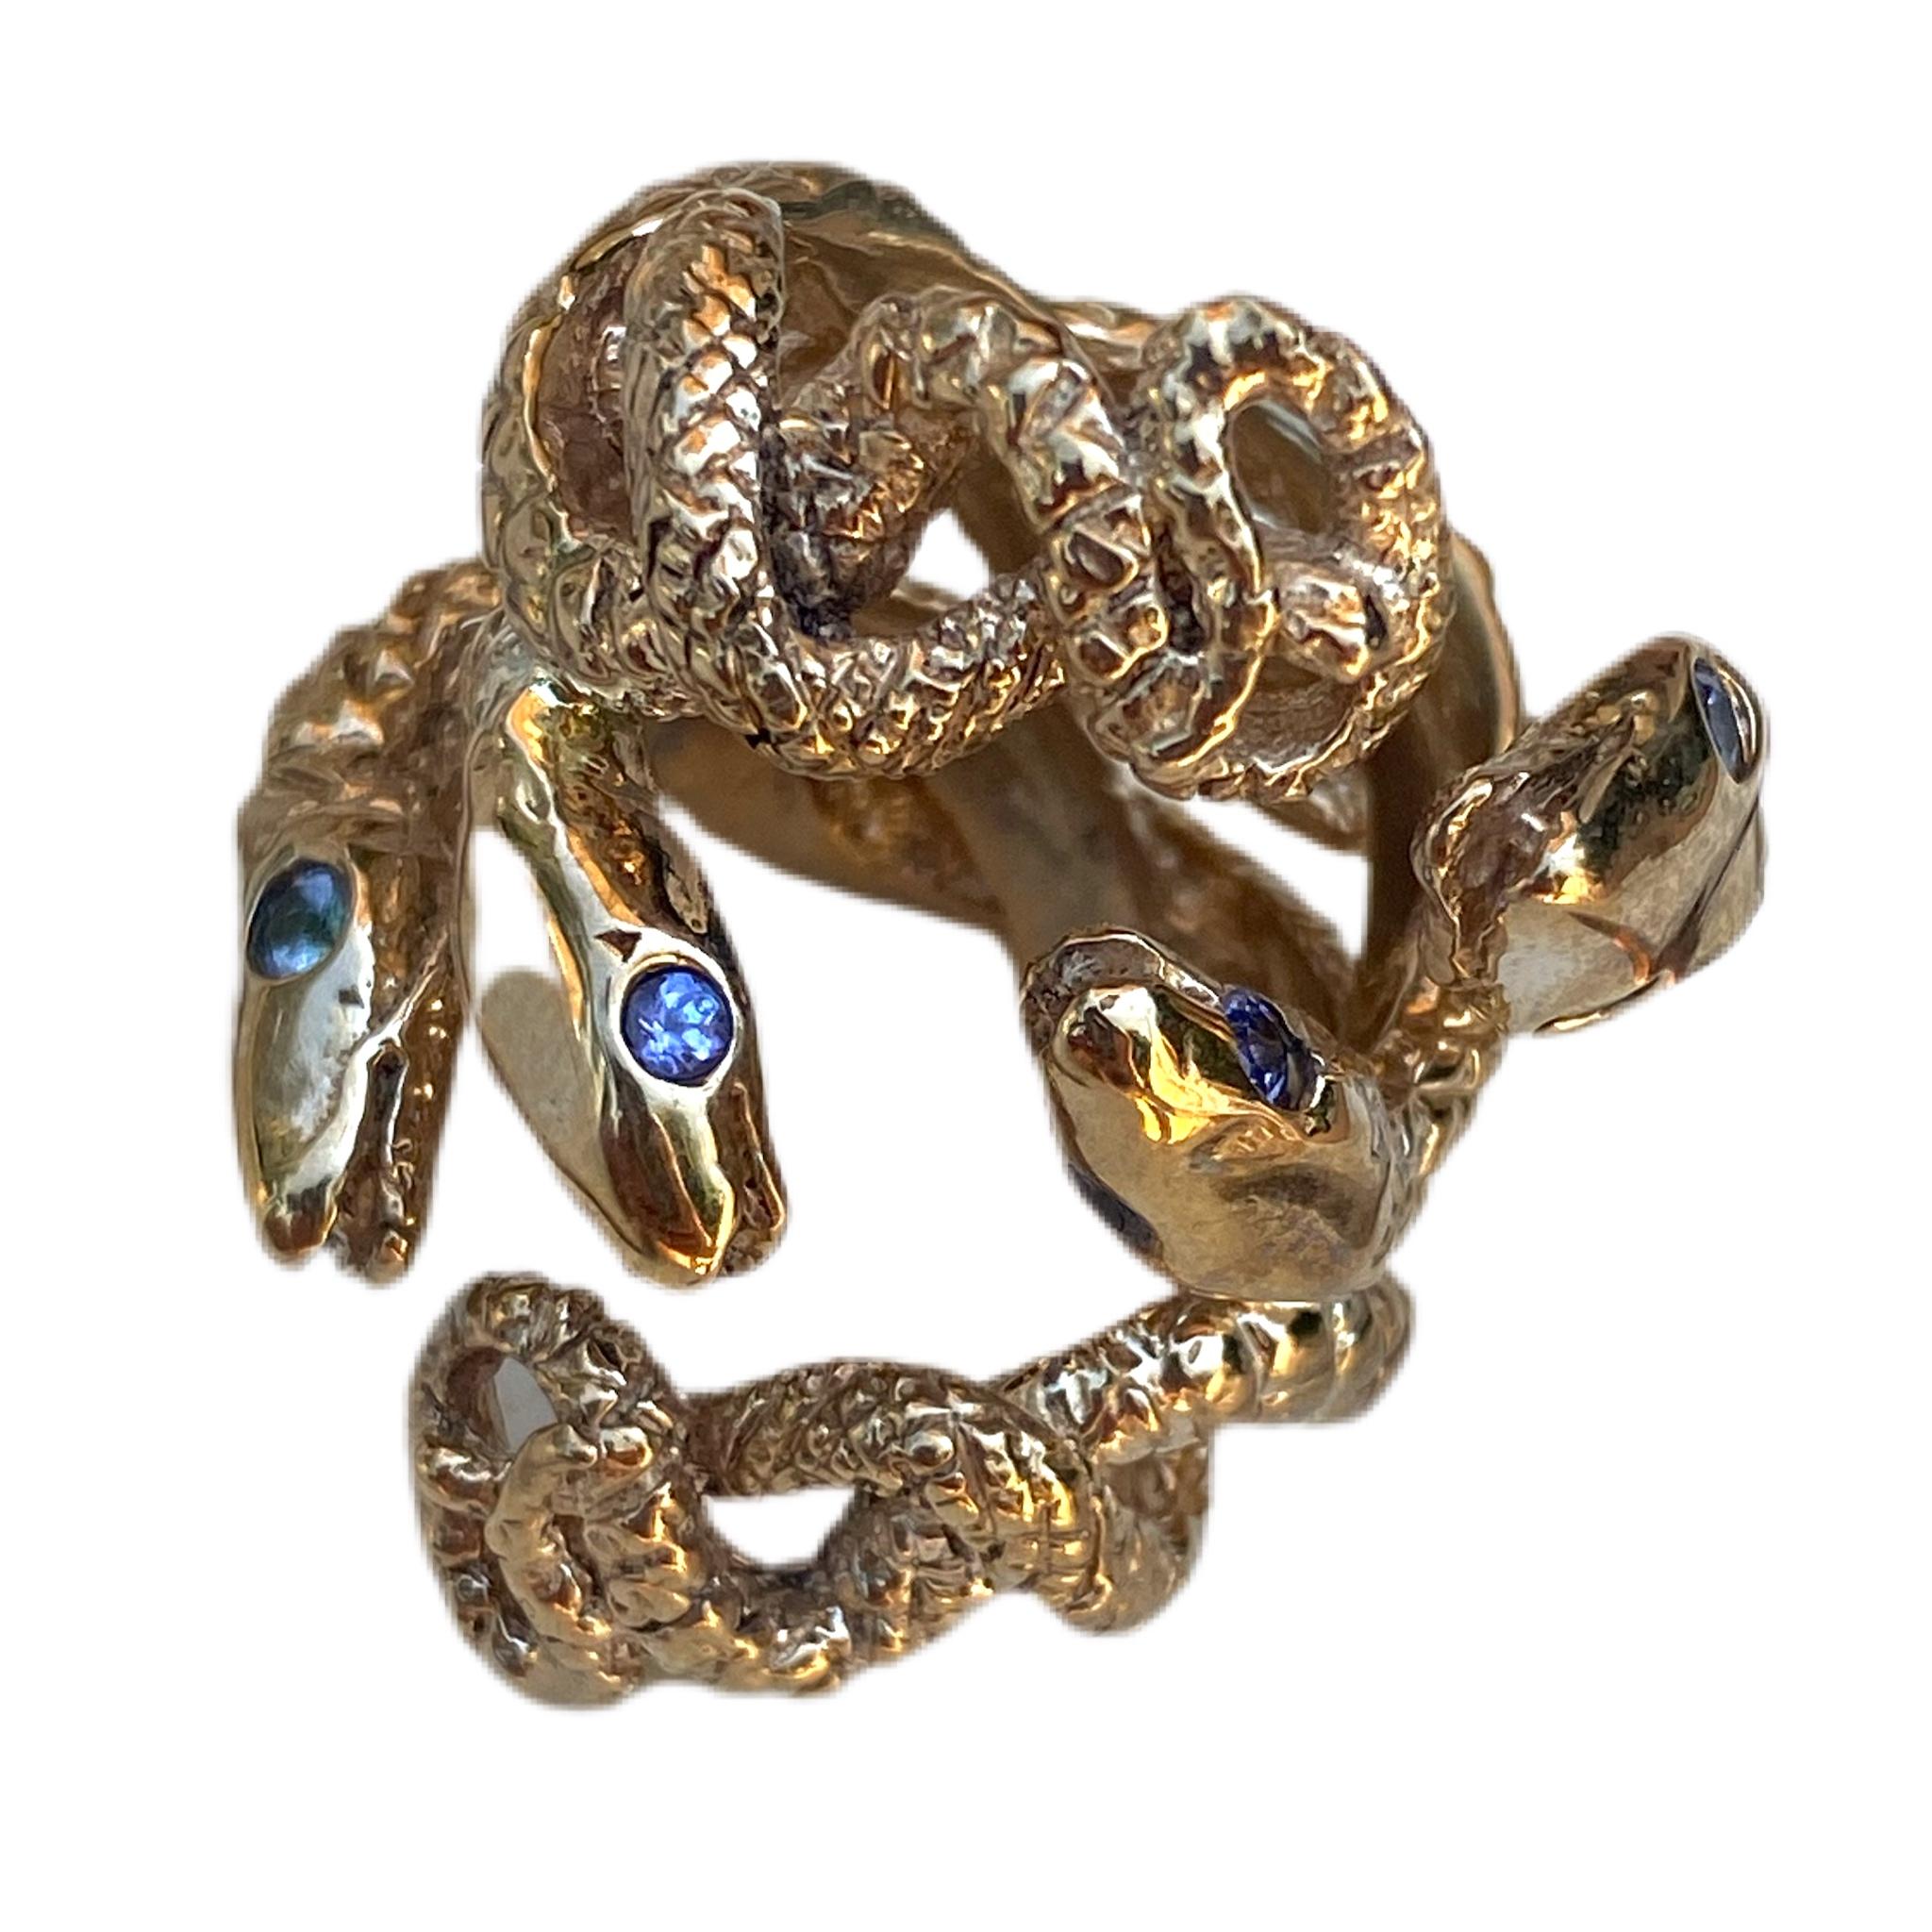 Snake Ring Tanzanite Bronze Resizable Cocktail Fashion Ring J Dauphin
J DAUPHIN 